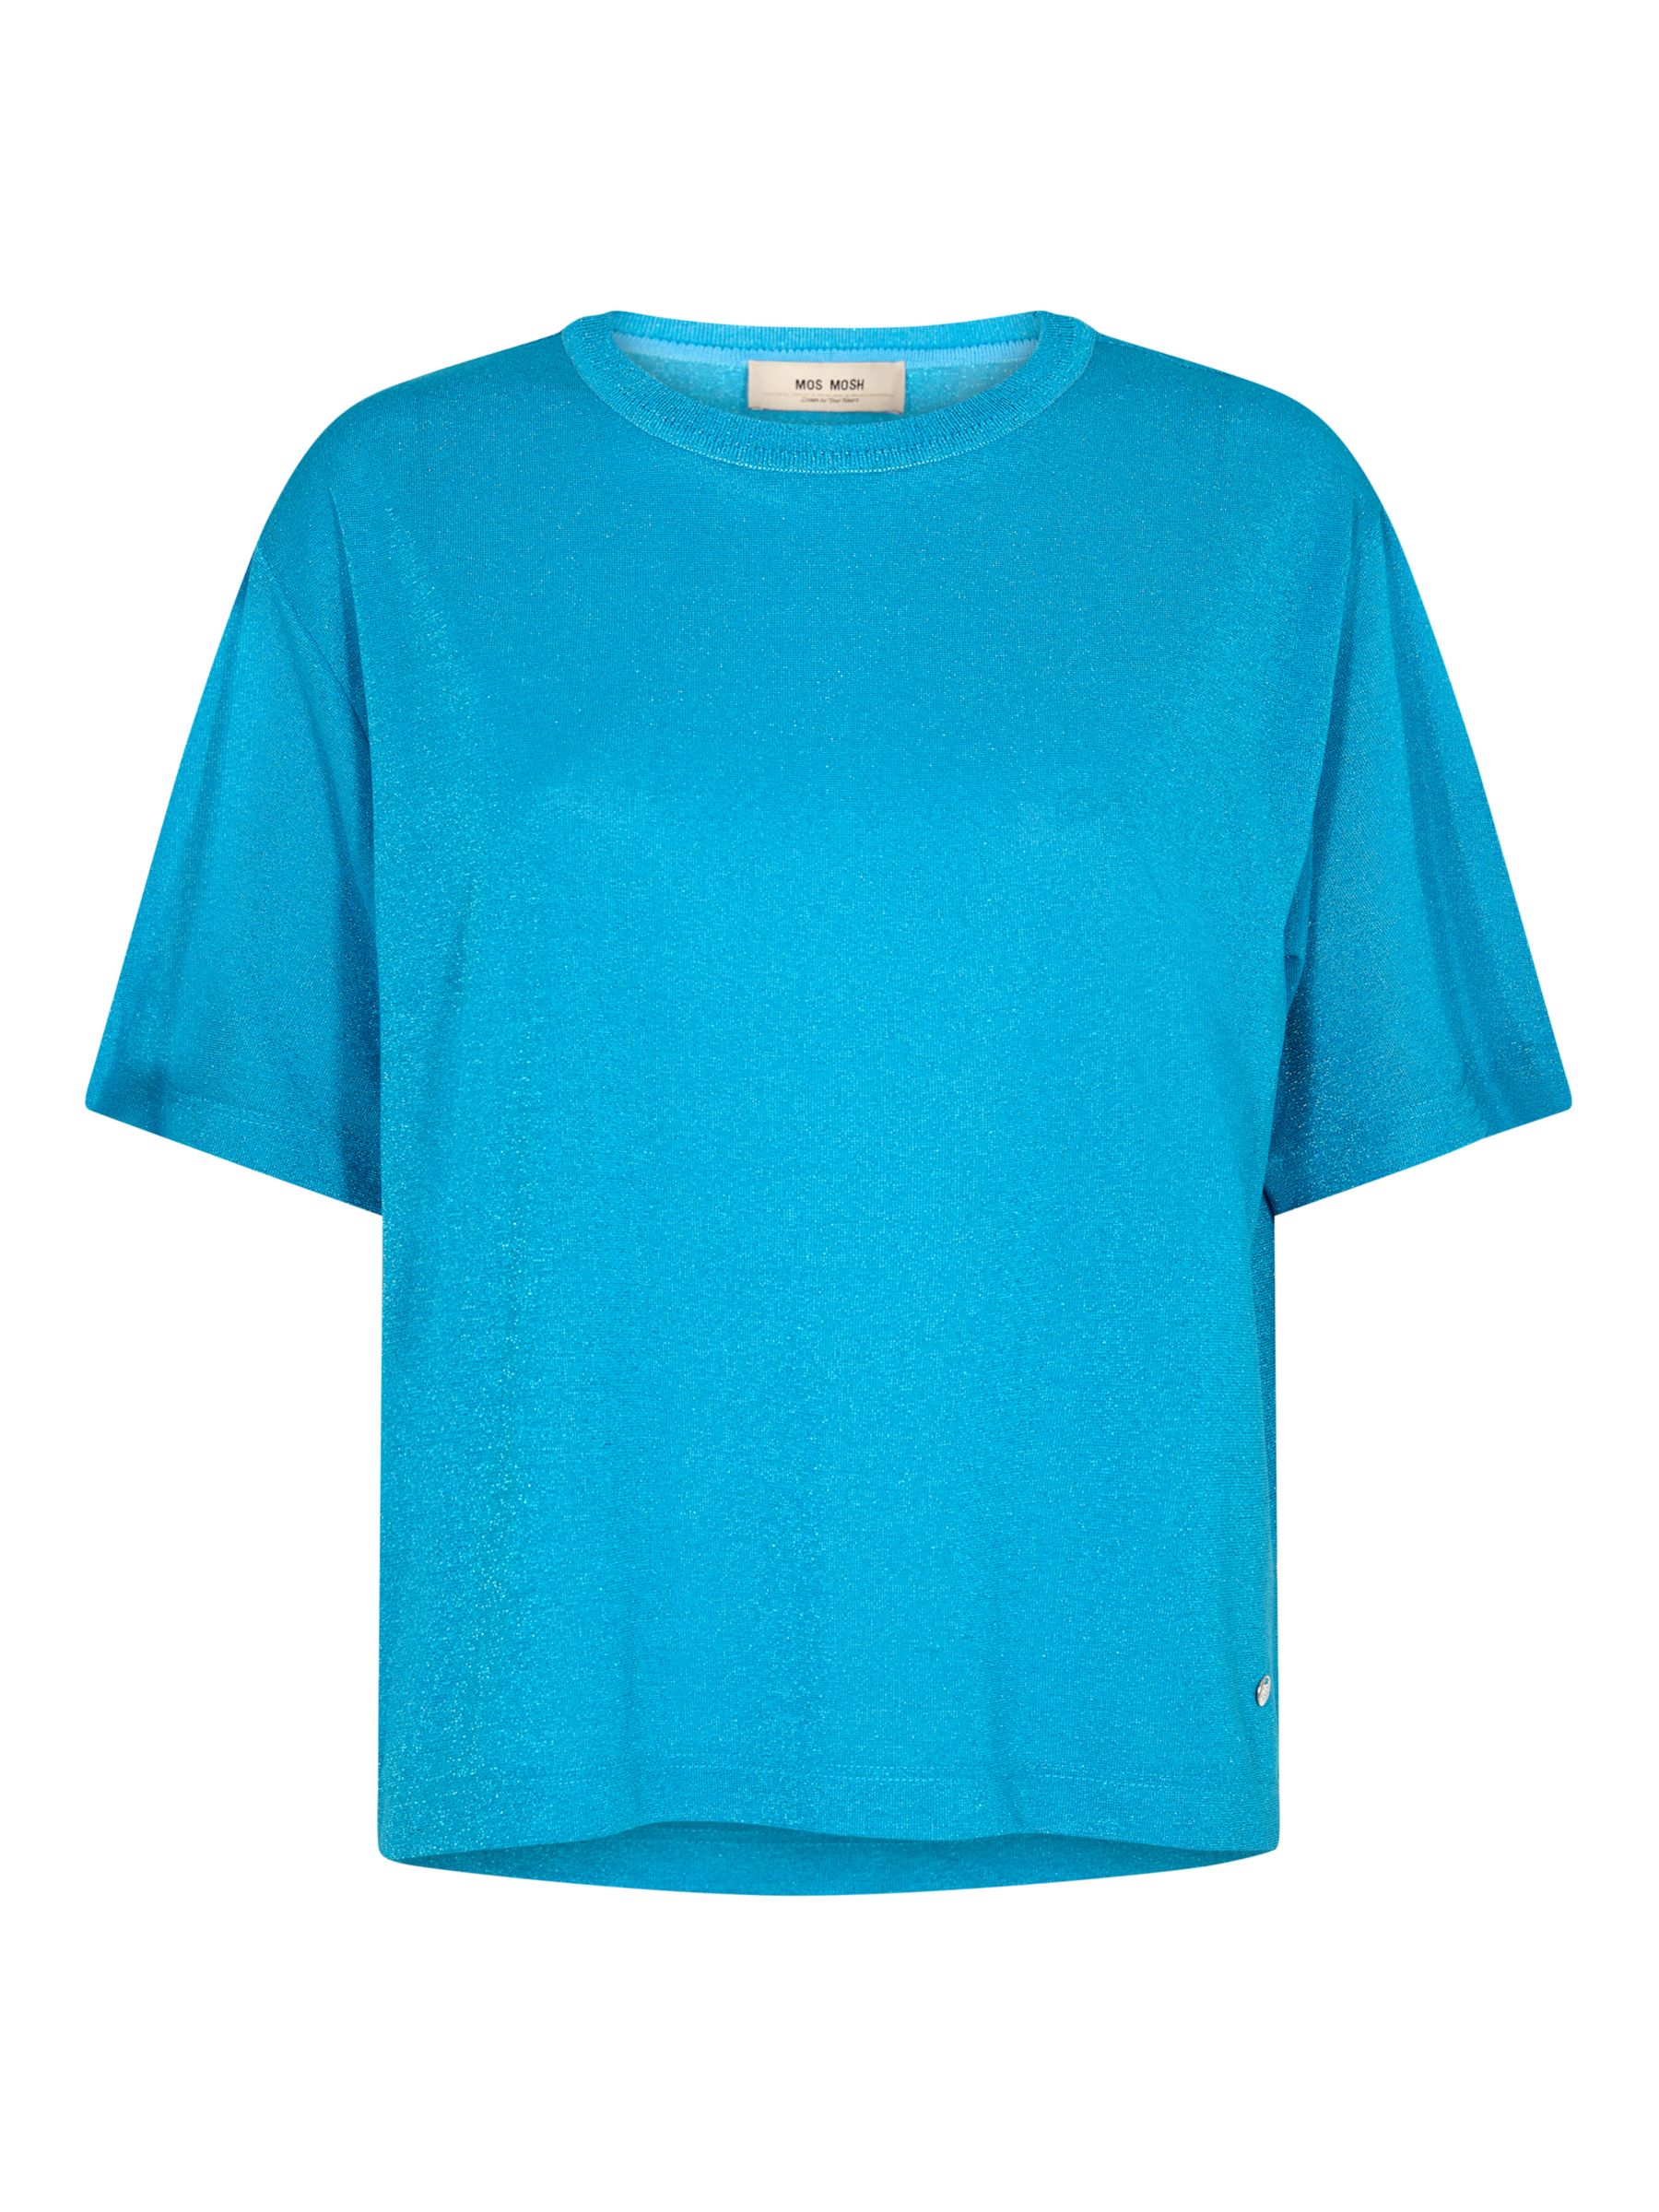 MOS MOSH Kit Lurex Short Sleeve T-Shirt, Blue Aster at John Lewis ...